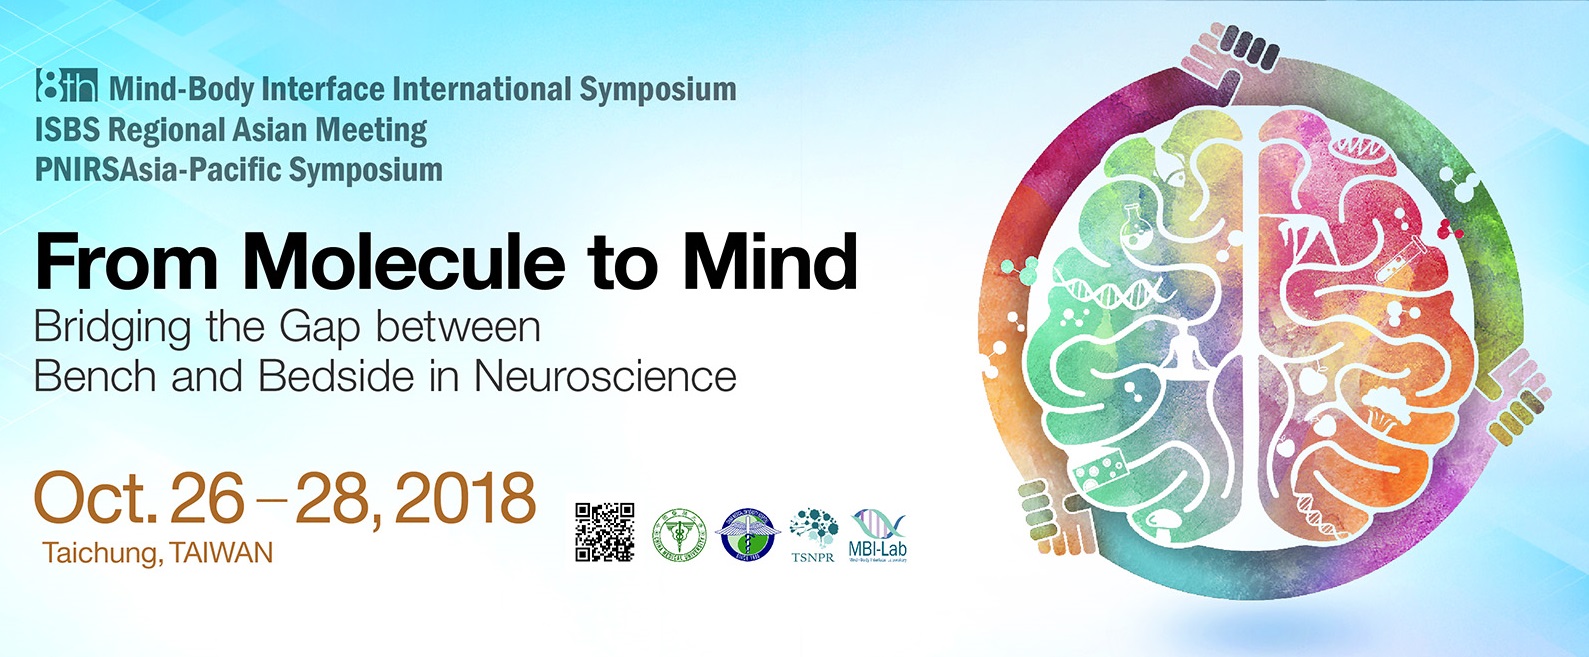 研討會：第八屆身心介面國際研討會 (8th Mind-Body Interface International Symposium)